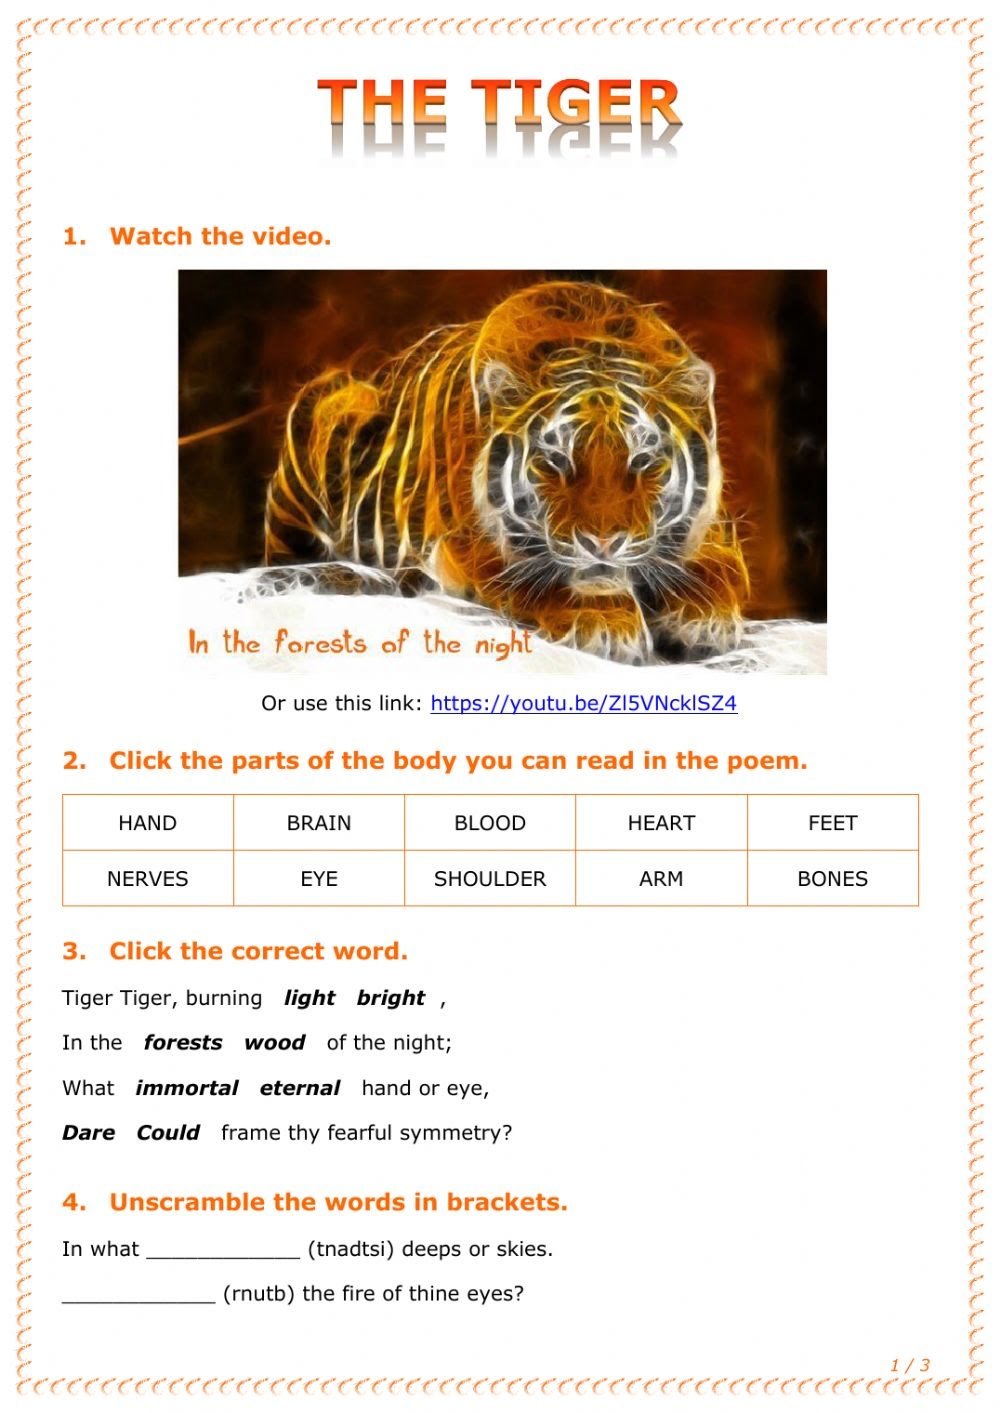 Tiger Reading Comprehension Worksheets